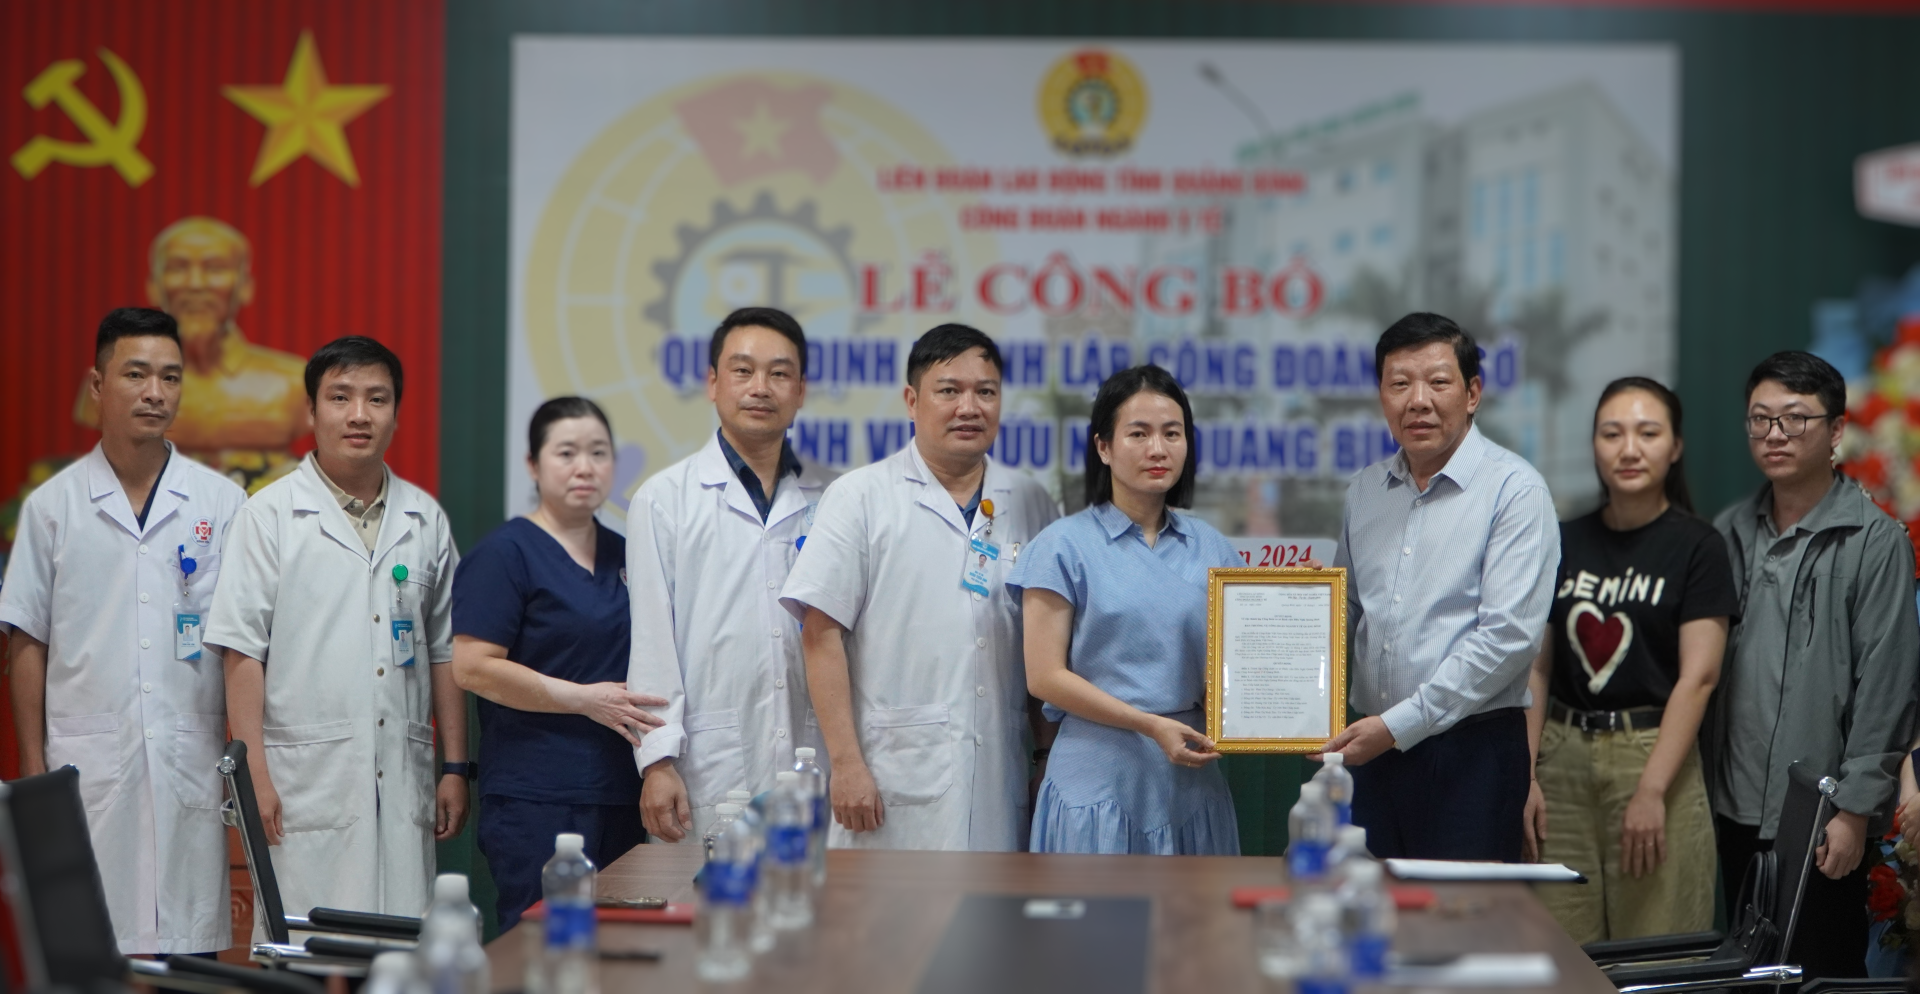 Đồng chí Phan Thanh Hải Chủ tịch Công đoàn ngành đã trao quyết định kết nạp 87 đoàn viên Công đoàn. Large